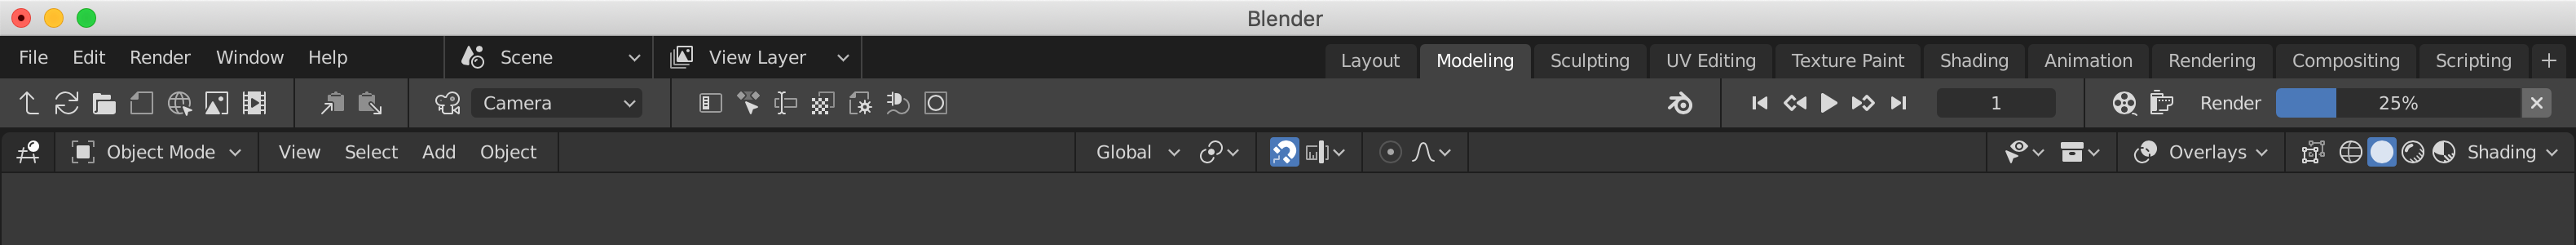 Download Blender UI Mockups (Updated) - User Feedback - Blender ...